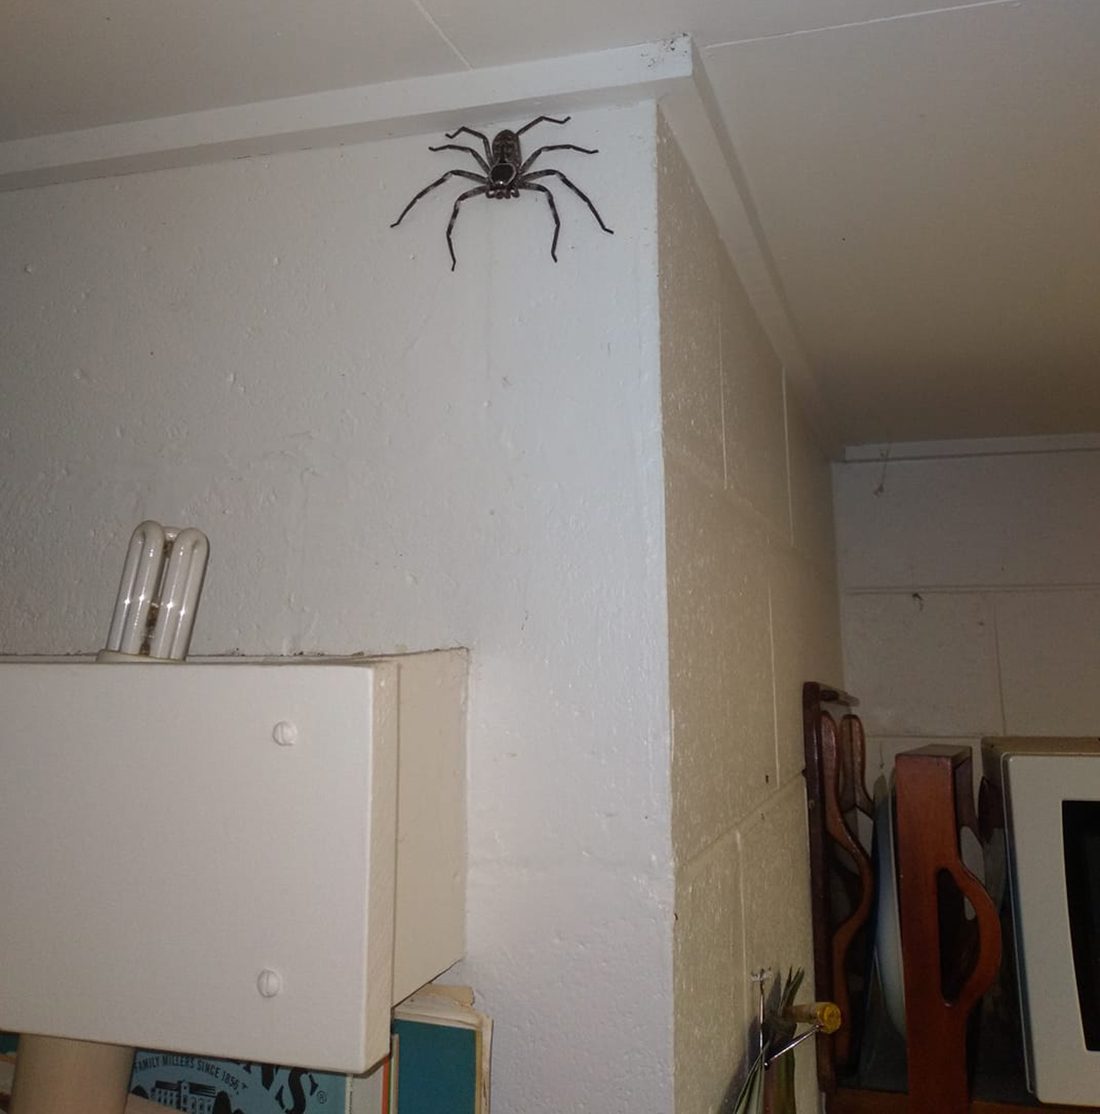 Giant huntsman spider